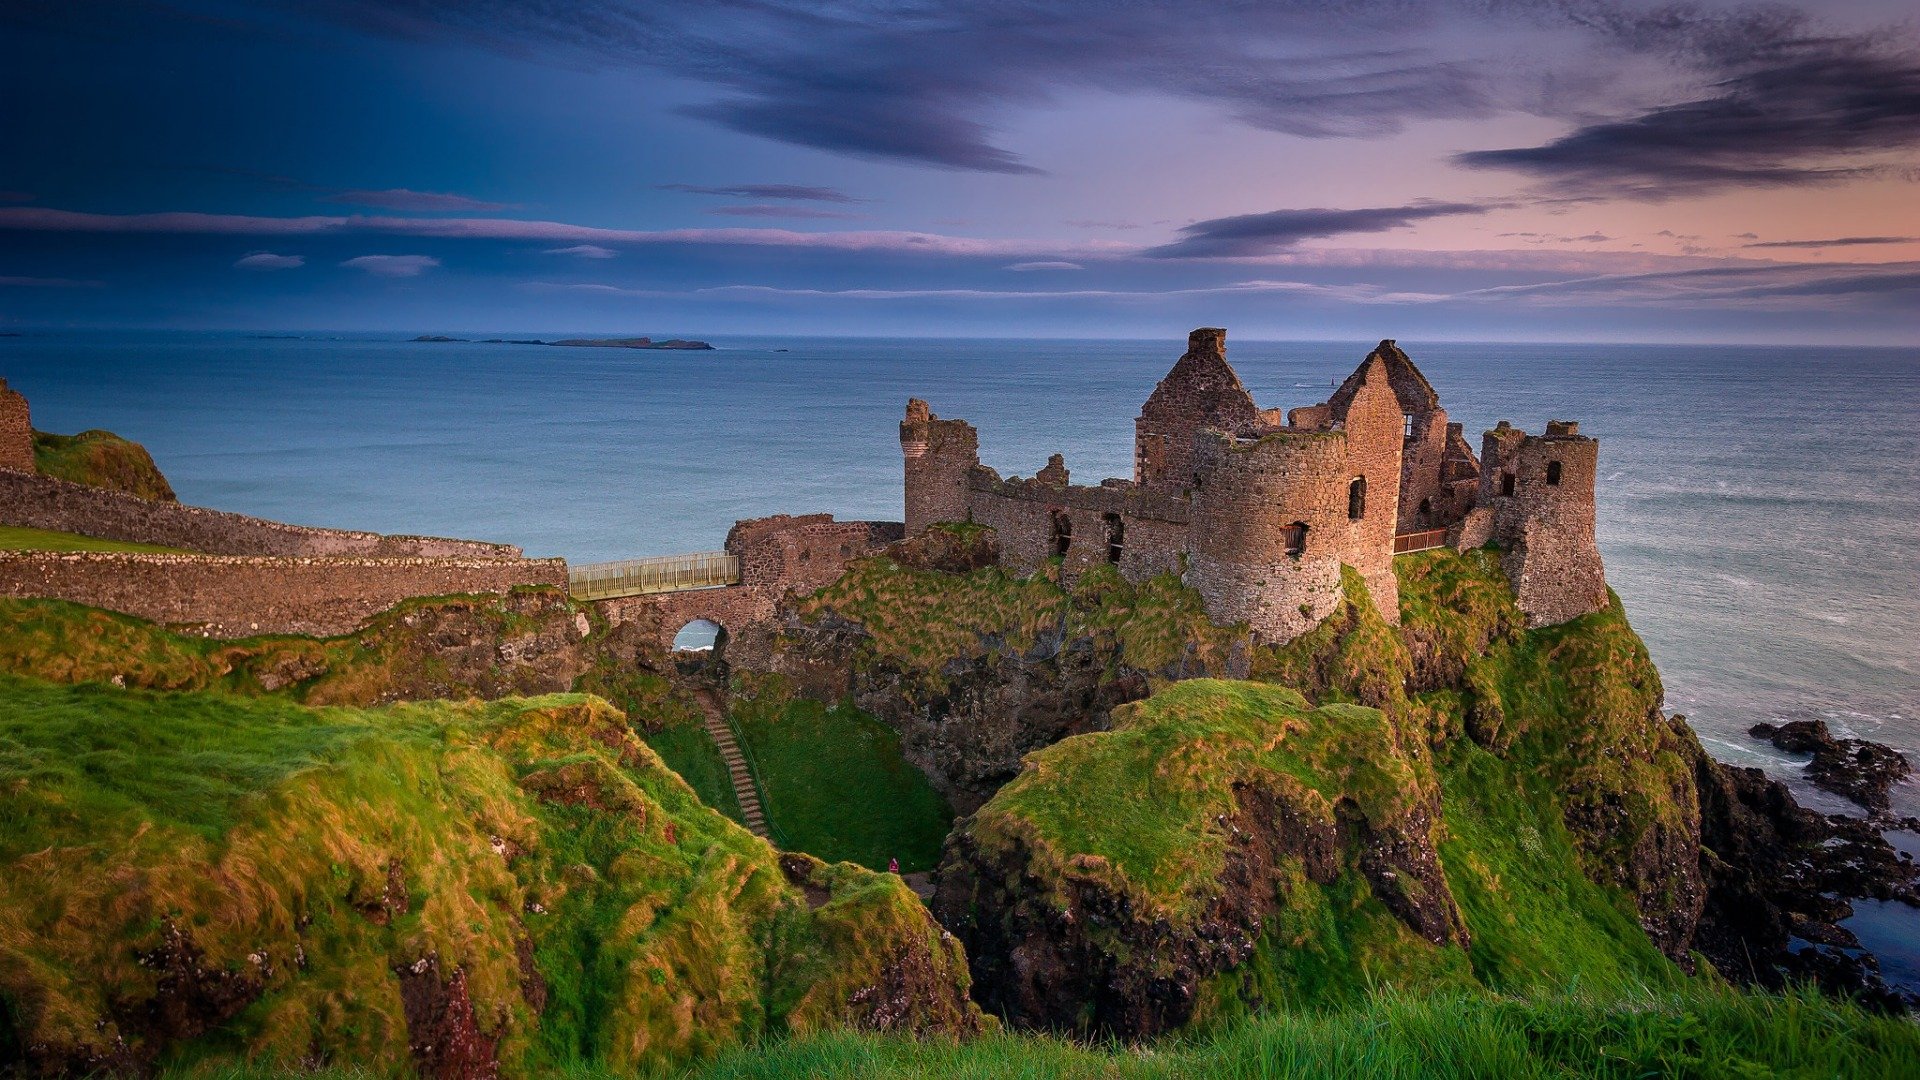 Đến với lâu đài Bắc Ireland và cảm nhận ngay sự tráng lệ của kiến trúc lịch sử xa xưa. Bức ảnh về lâu đài này sẽ mang đến cho bạn cảm giác như đang được tận mắt chứng kiến những bí mật và huyền thoại kỳ diệu xoay quanh nó. Hãy khám phá và đắm mình trong sự vĩ đại của lịch sử Ireland.